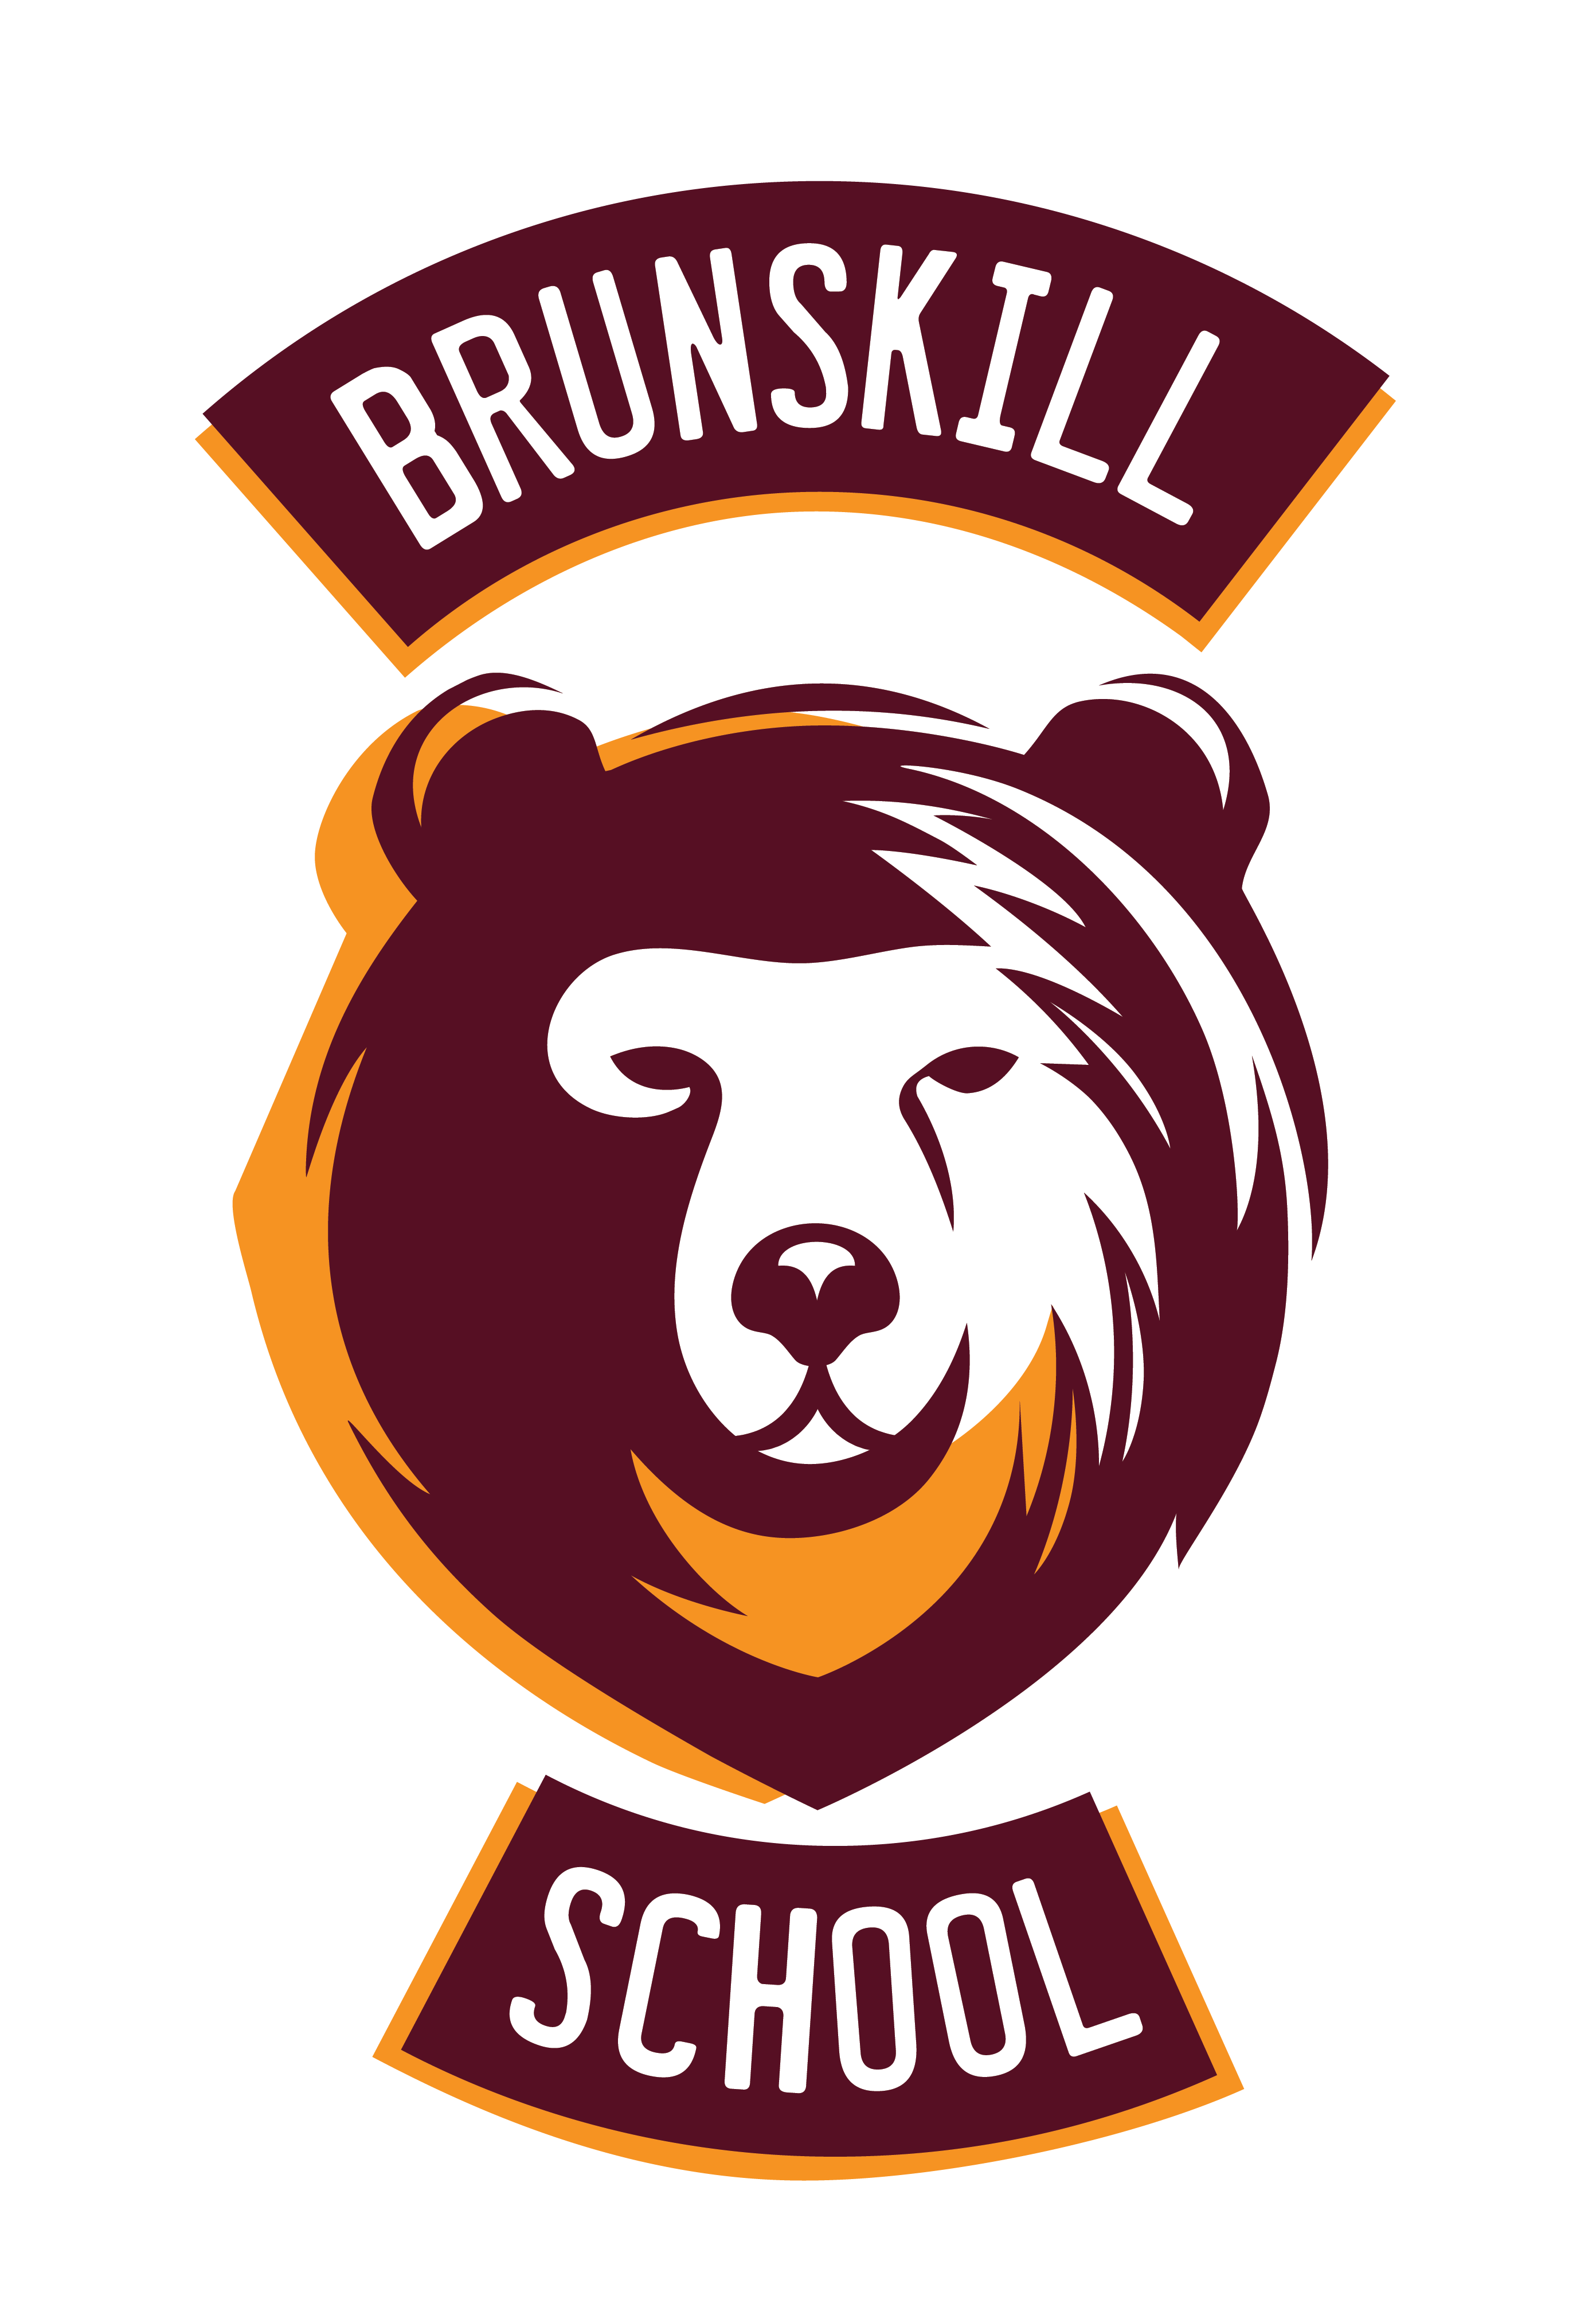 Brunskill School logo